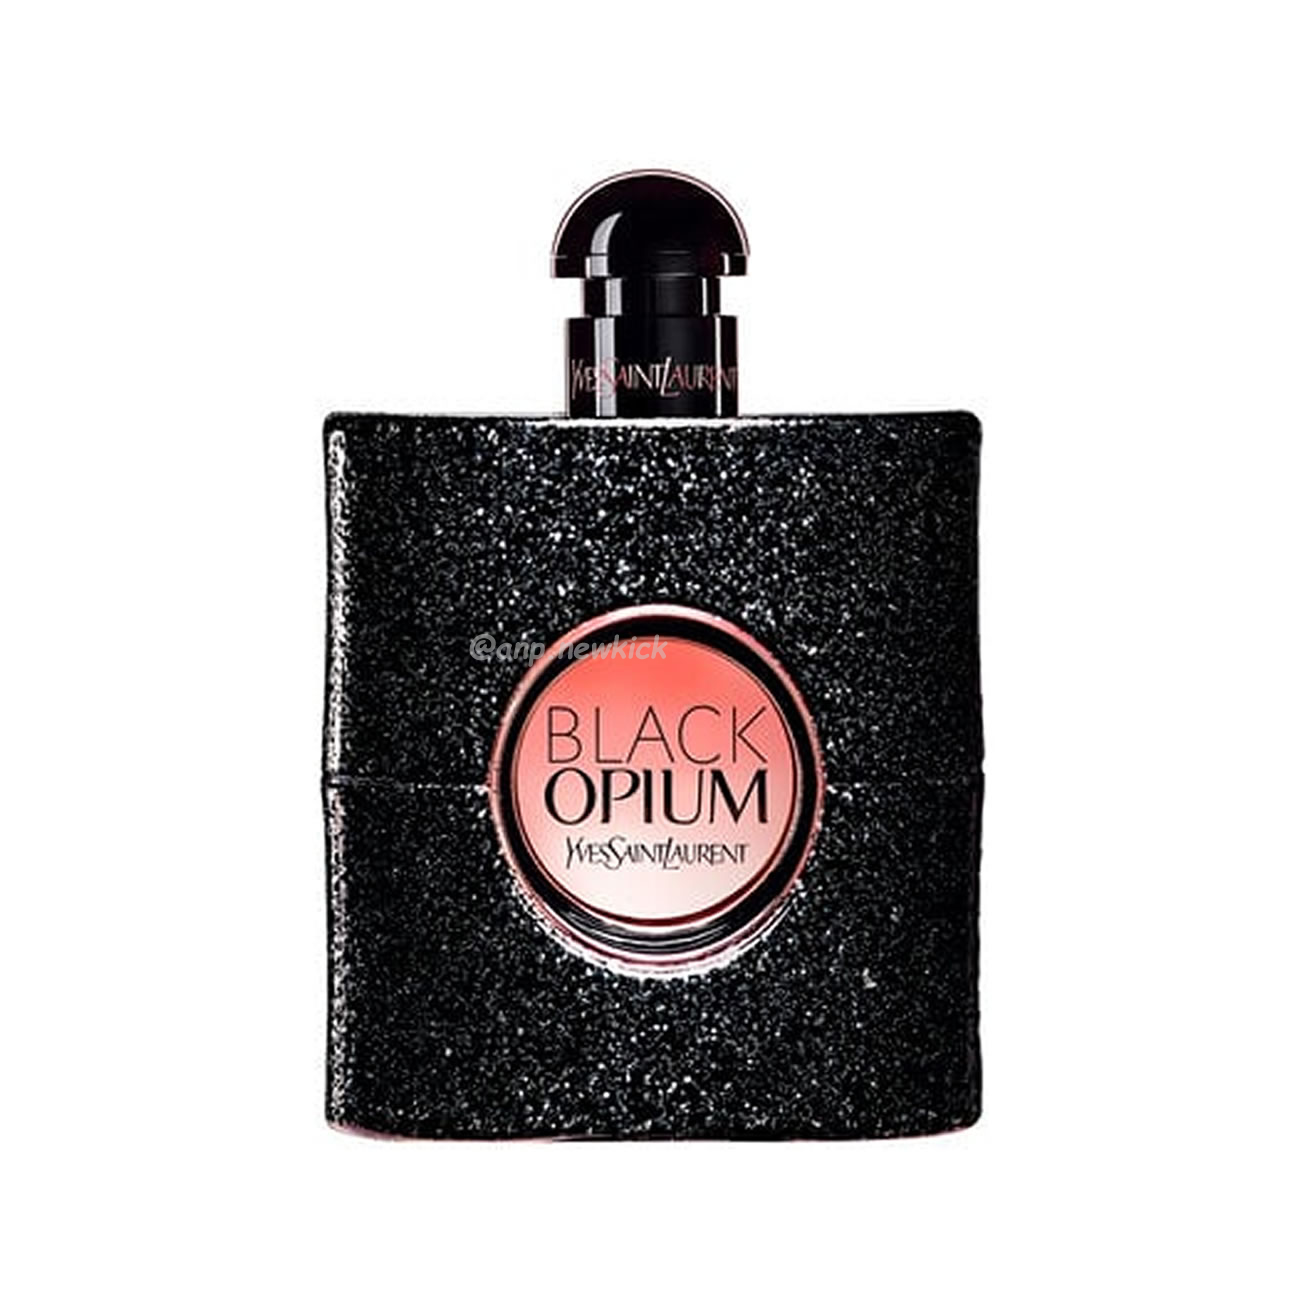 Yves Saint Laurent Ysl Black Opium Edp 90ml (1) - newkick.org